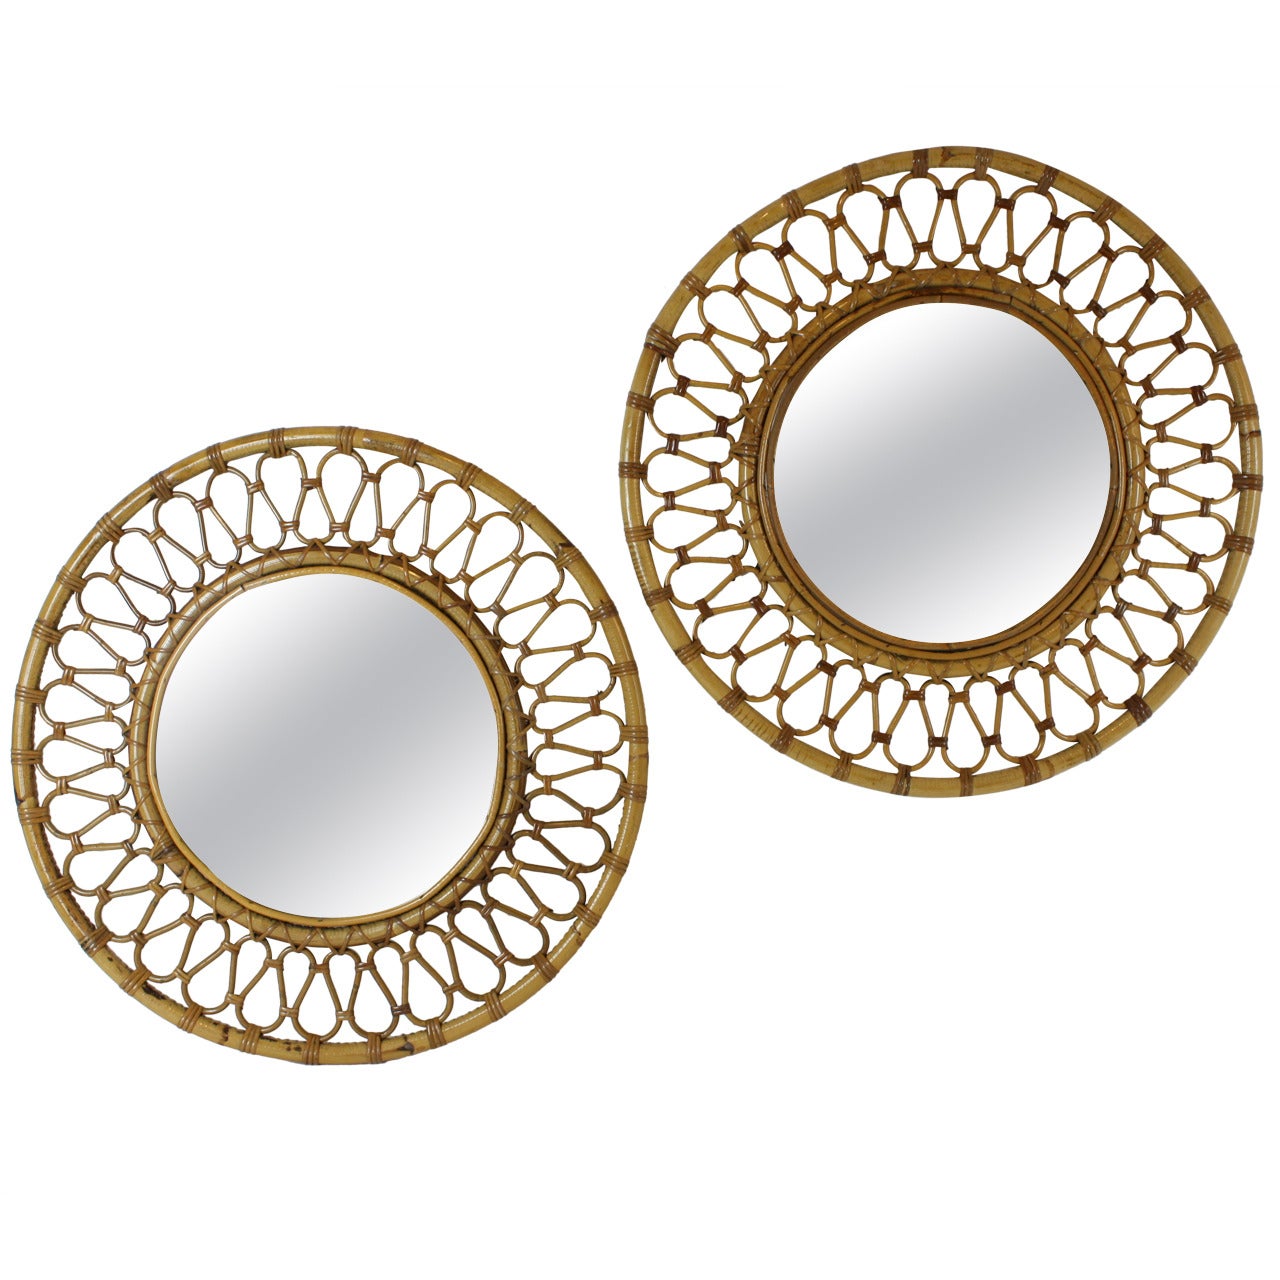 Pair of Spanish Bamboo and Wicker Midcentury Circular Mirrors